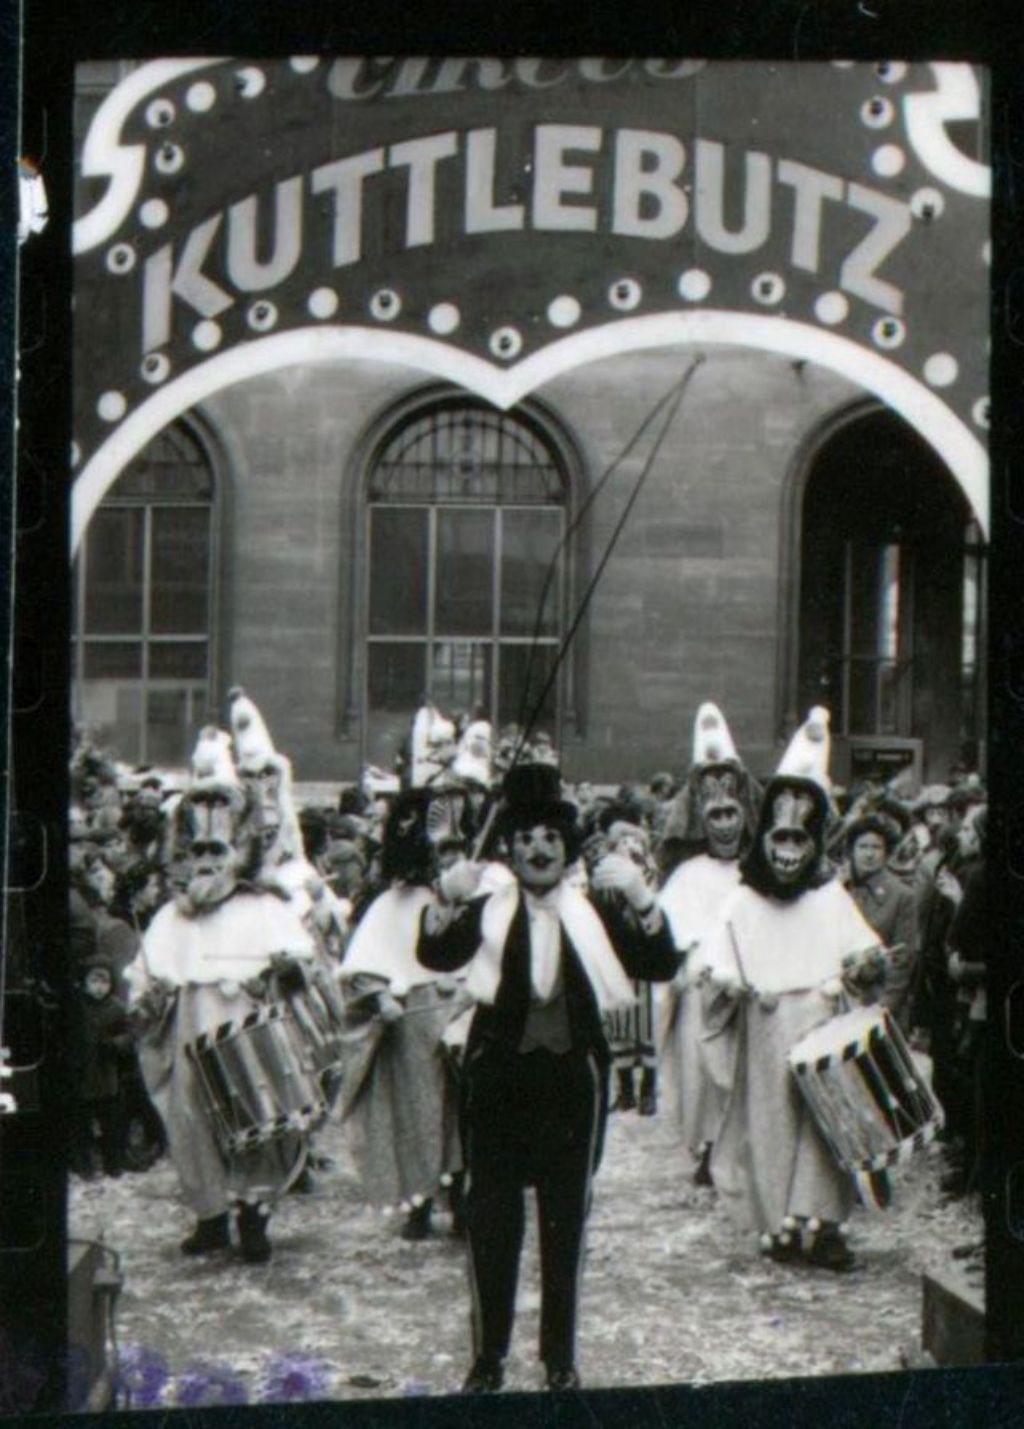 Clique Kuttlebutz mit Trommlern und mit Jean Tinguely, der als Vorträber posiert